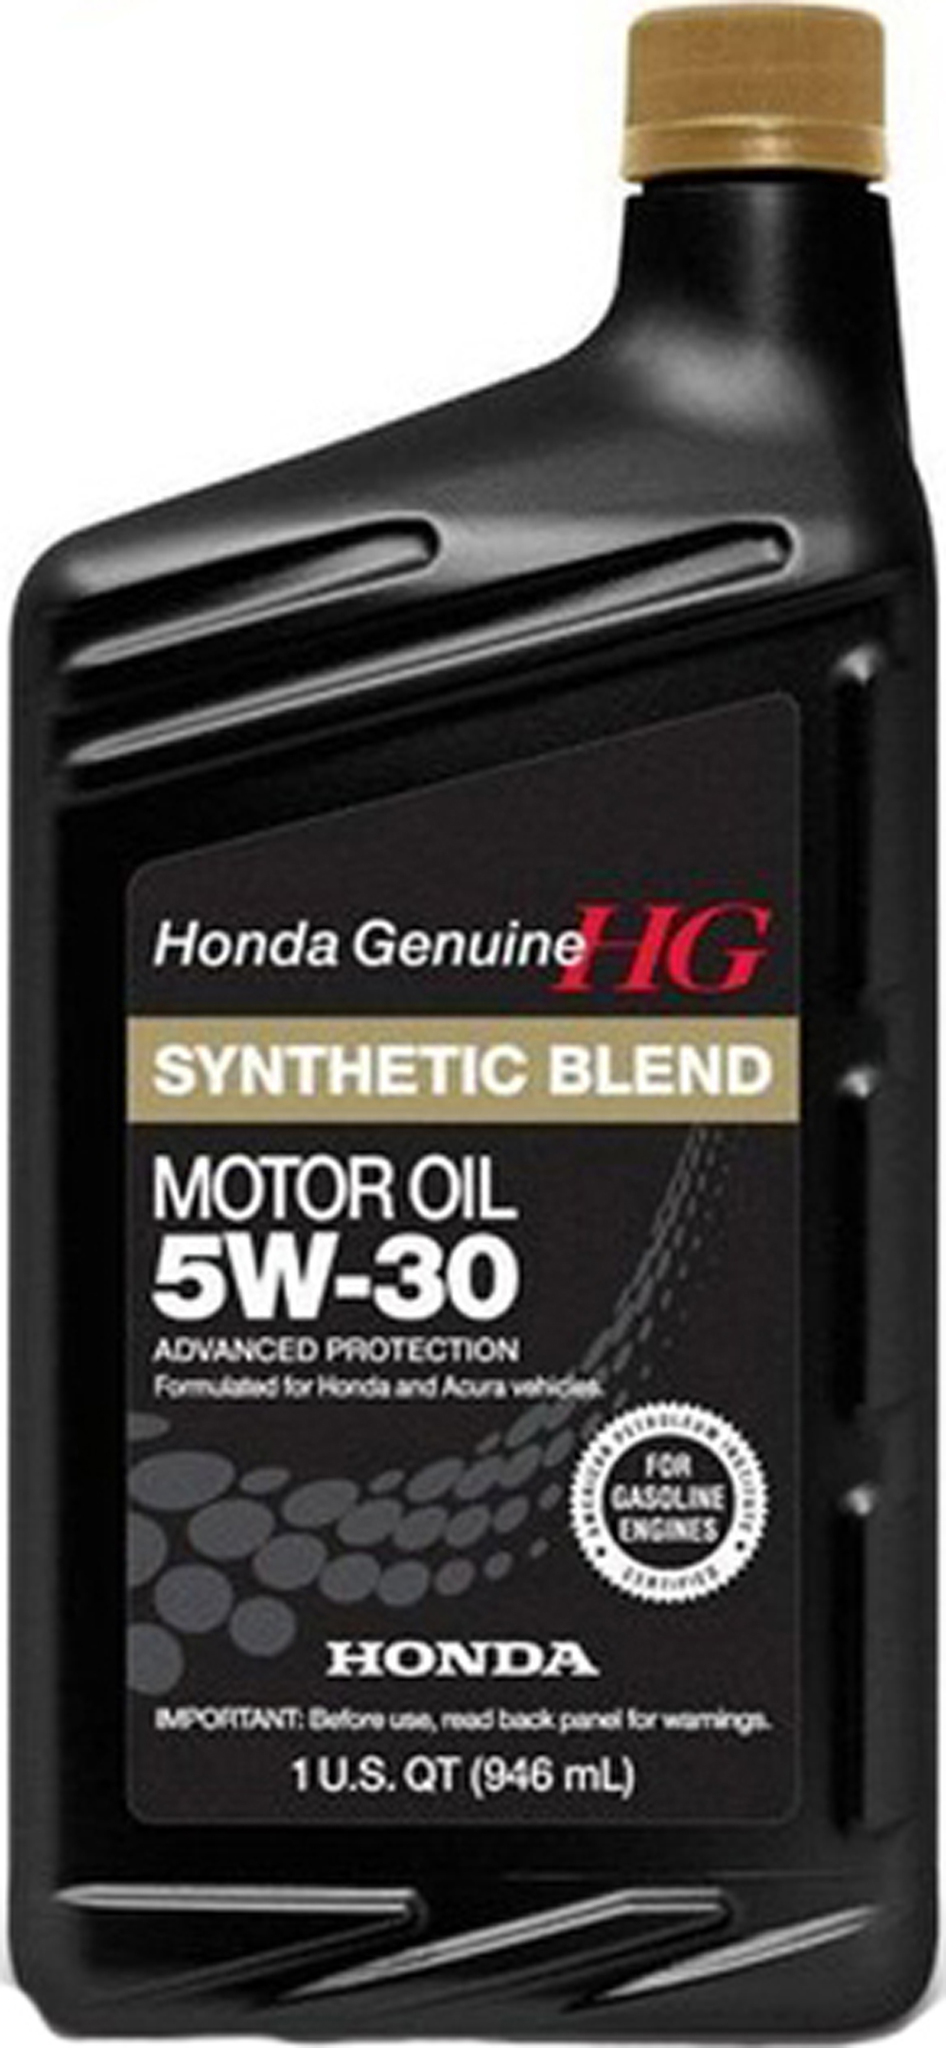 Honda Motoroil 5W-30 SL- специальное моторное масло для автомобилей Honda.